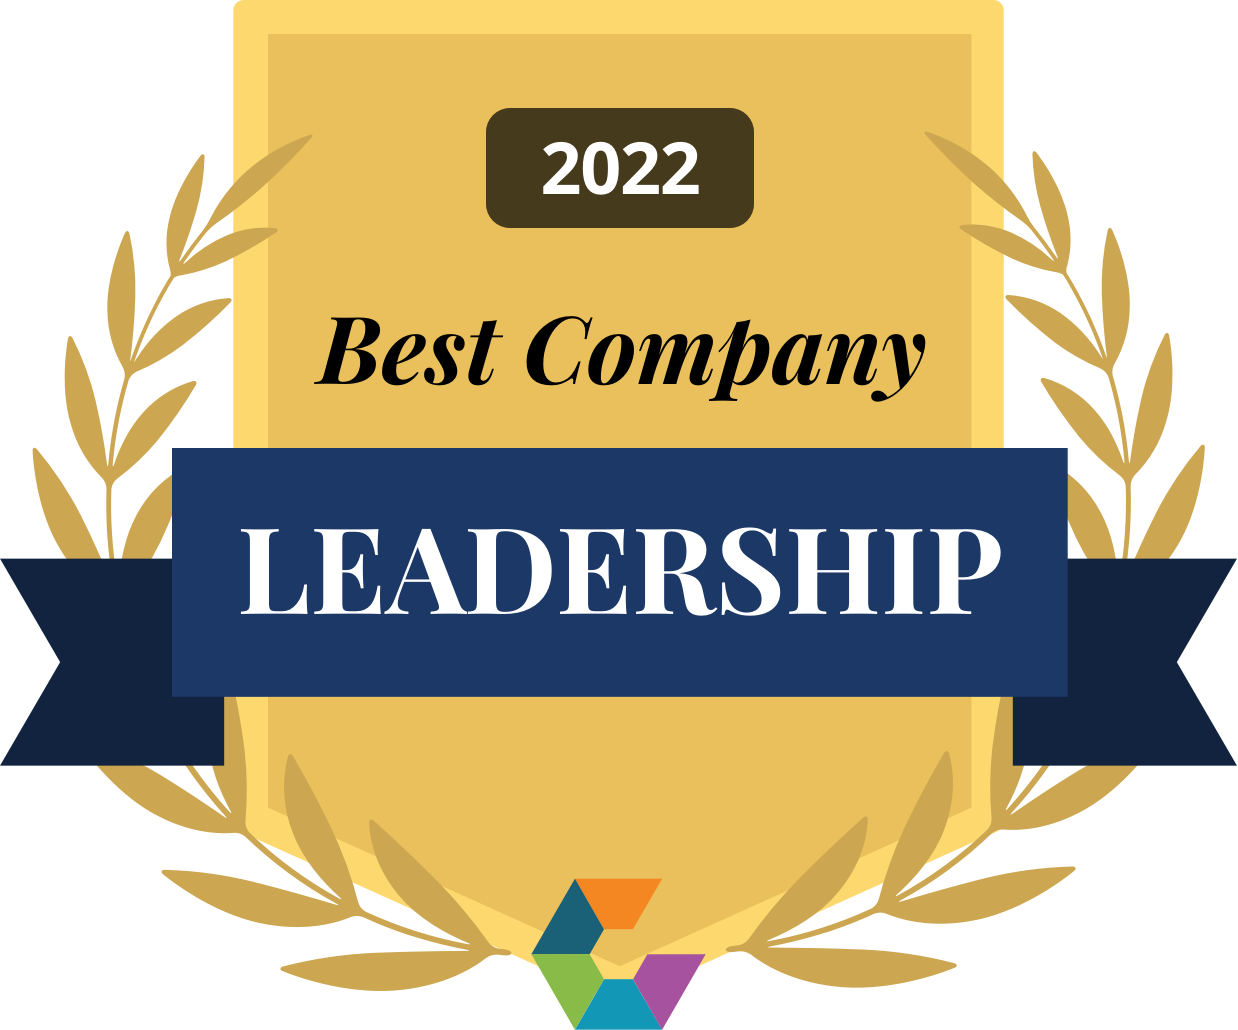 Best Company Leadership 2022 Award